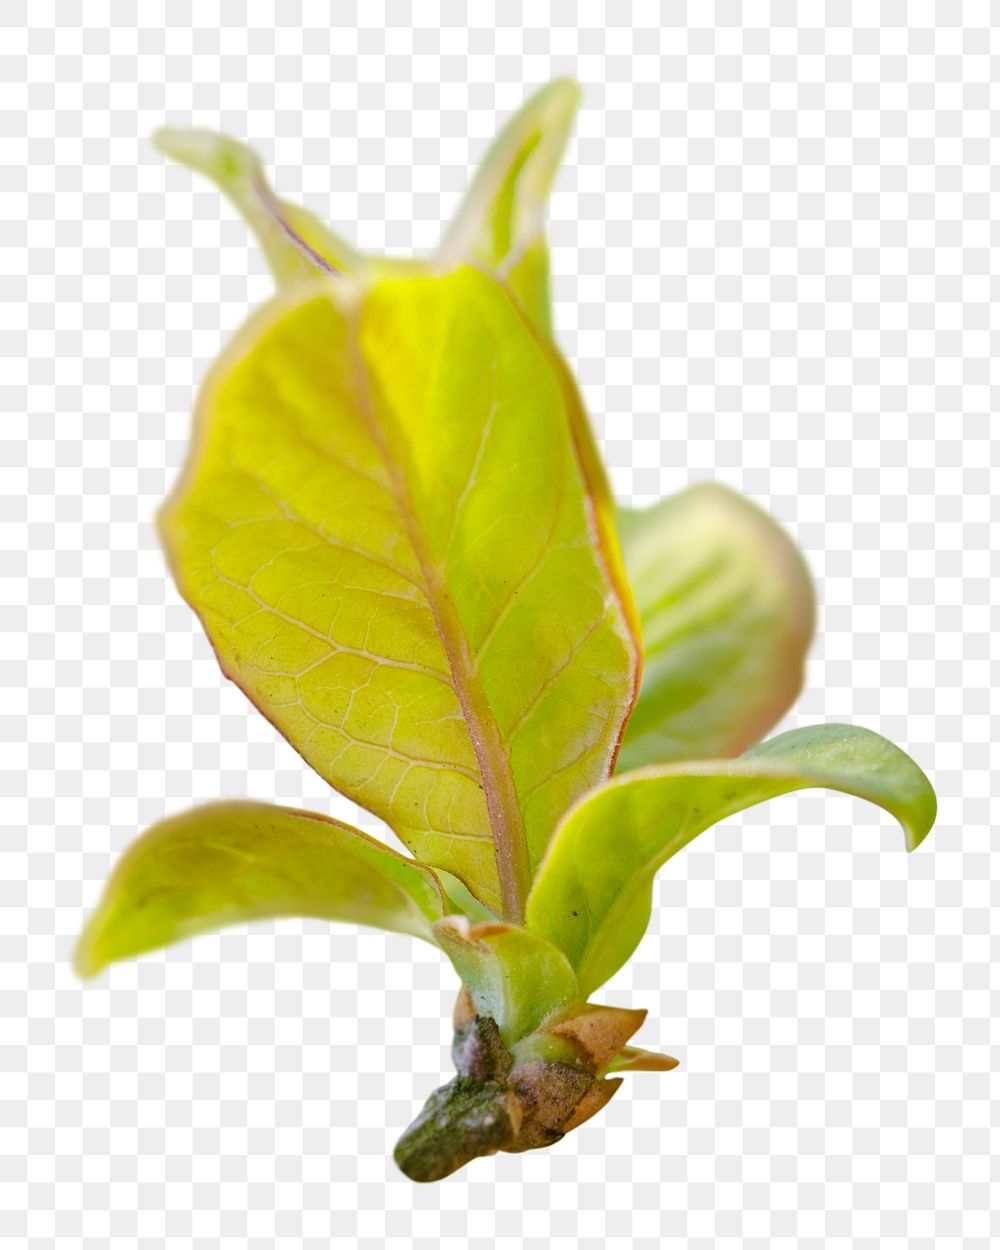 Leaf bud png sticker, transparent background